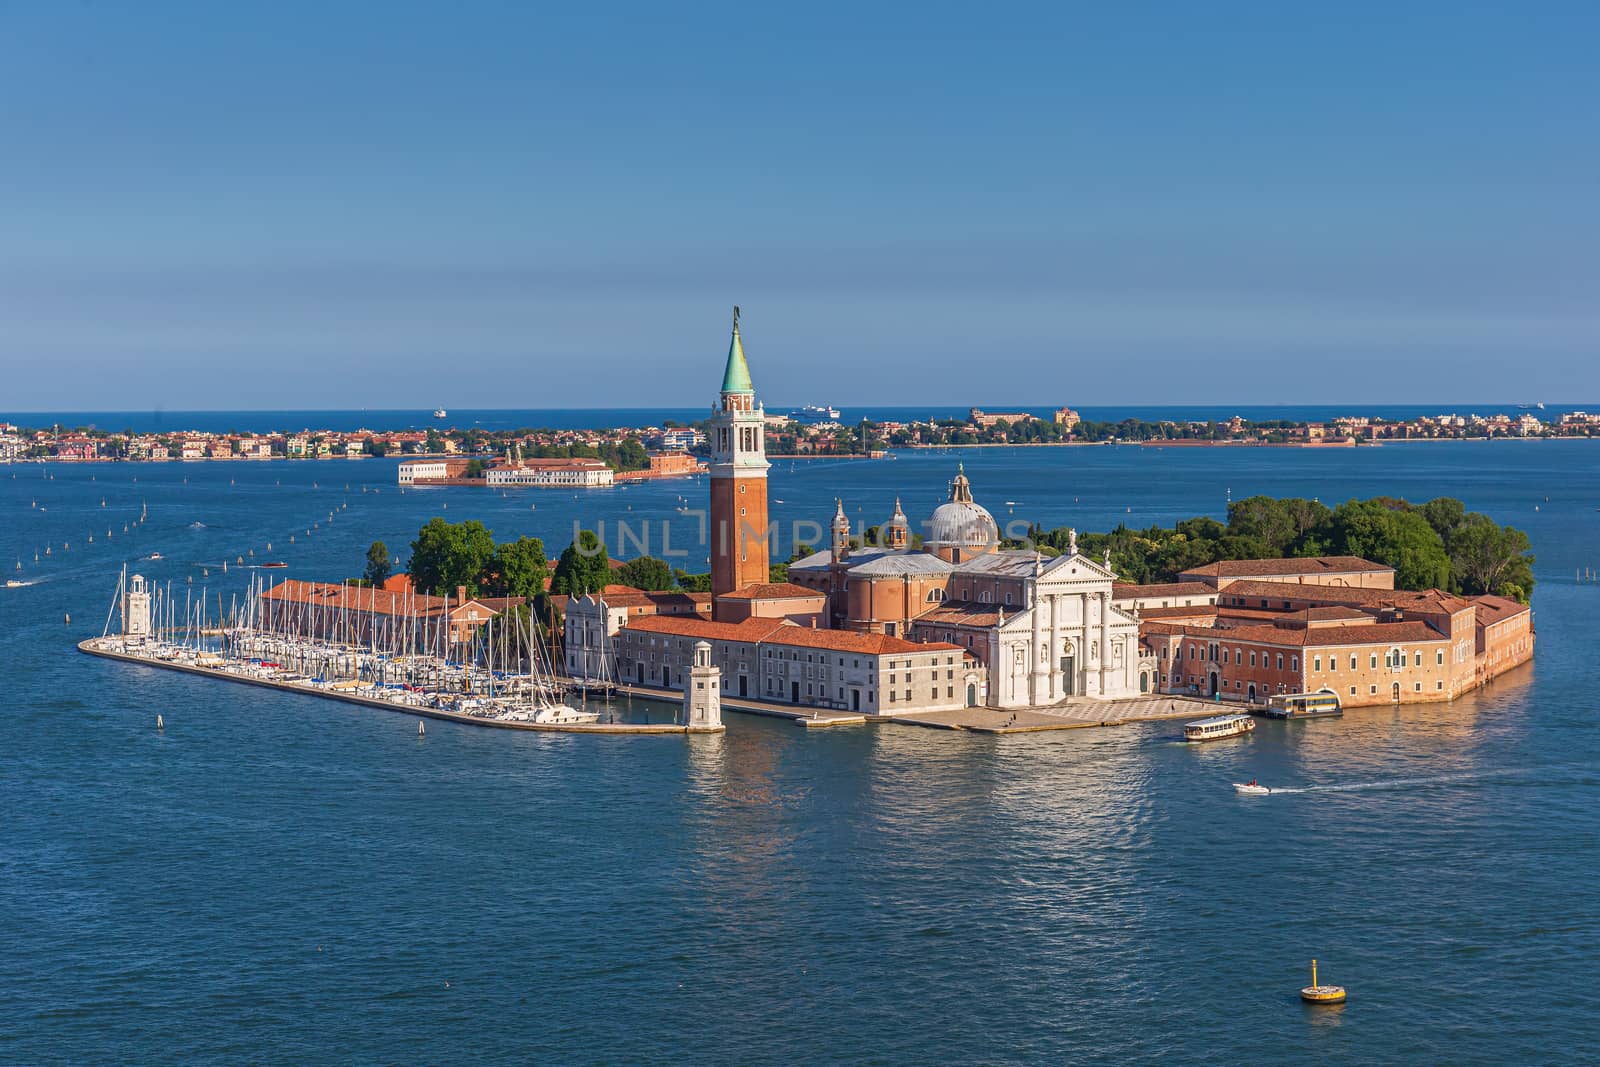 San Giorgio Maggiore in Venice by COffe